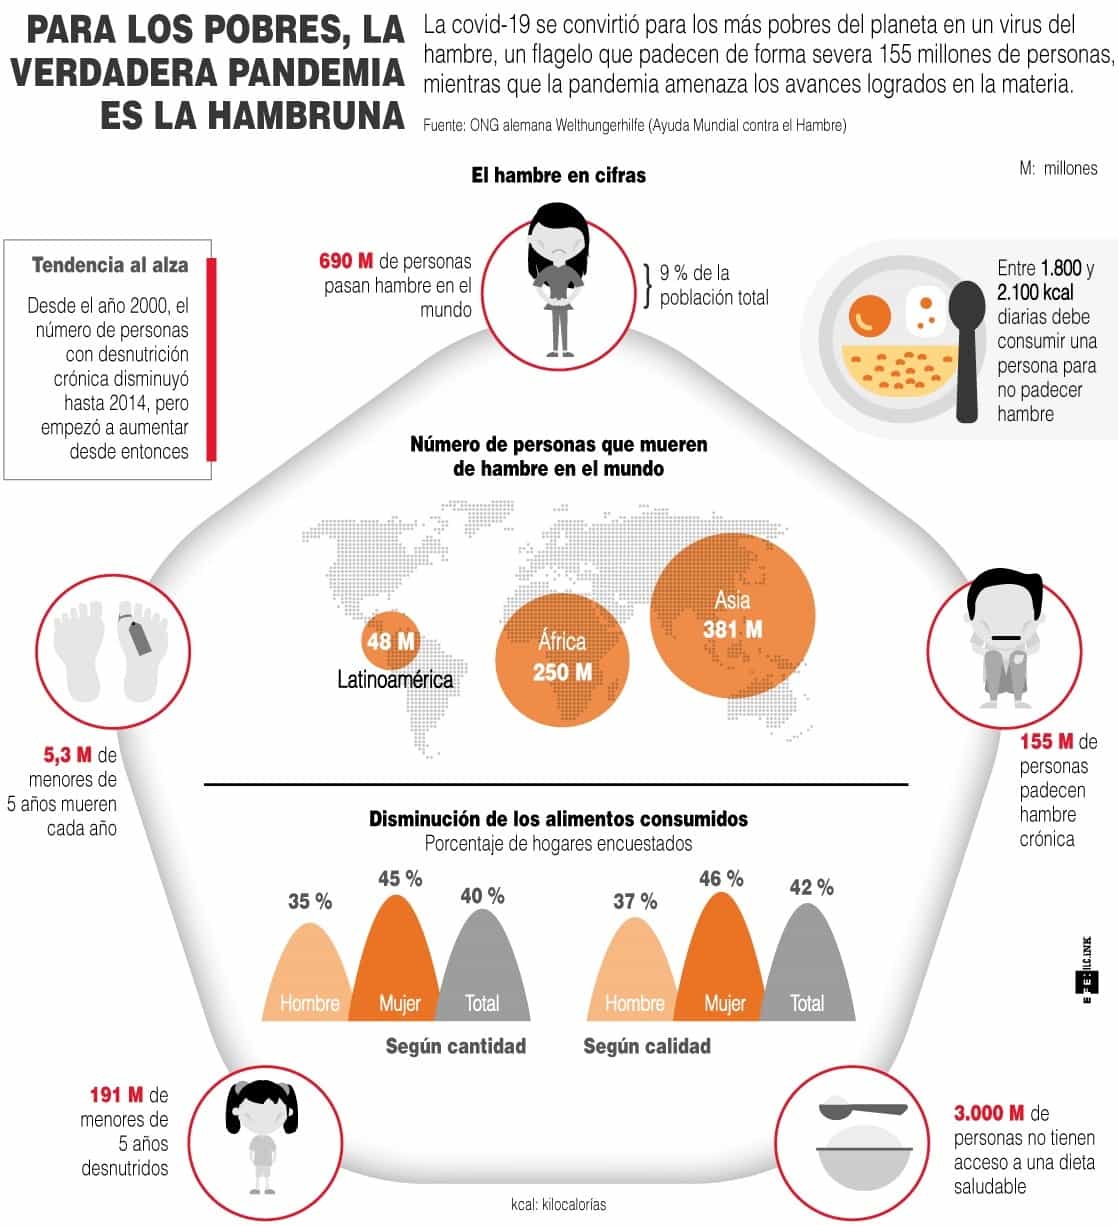 [Infografía] Para los pobres, la verdadera pandemia es la hambruna 1